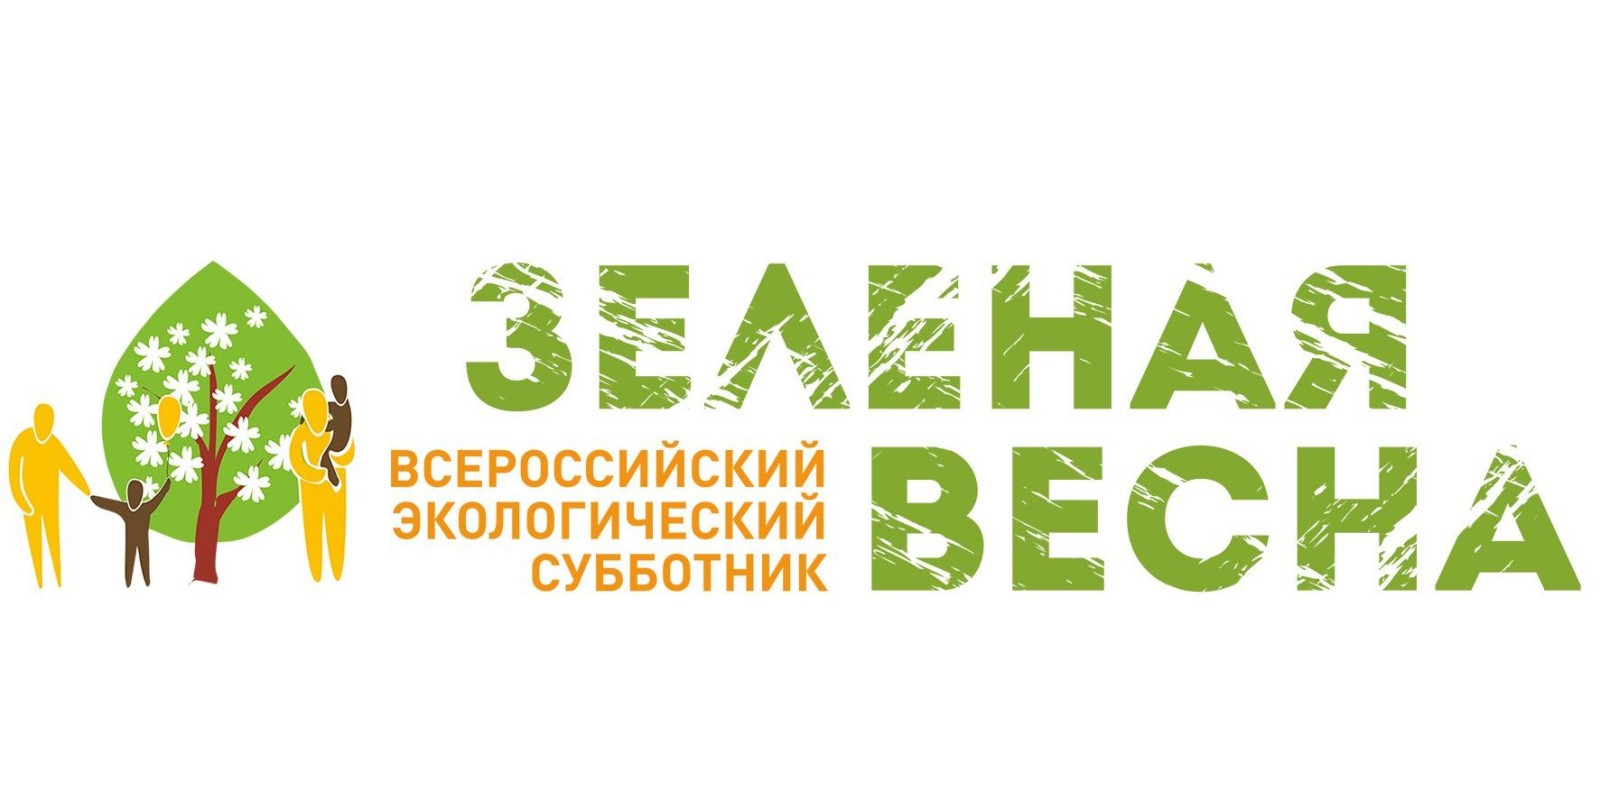 Подведены итоги мероприятий, прошедших в рамках Всероссийского экологического субботника 